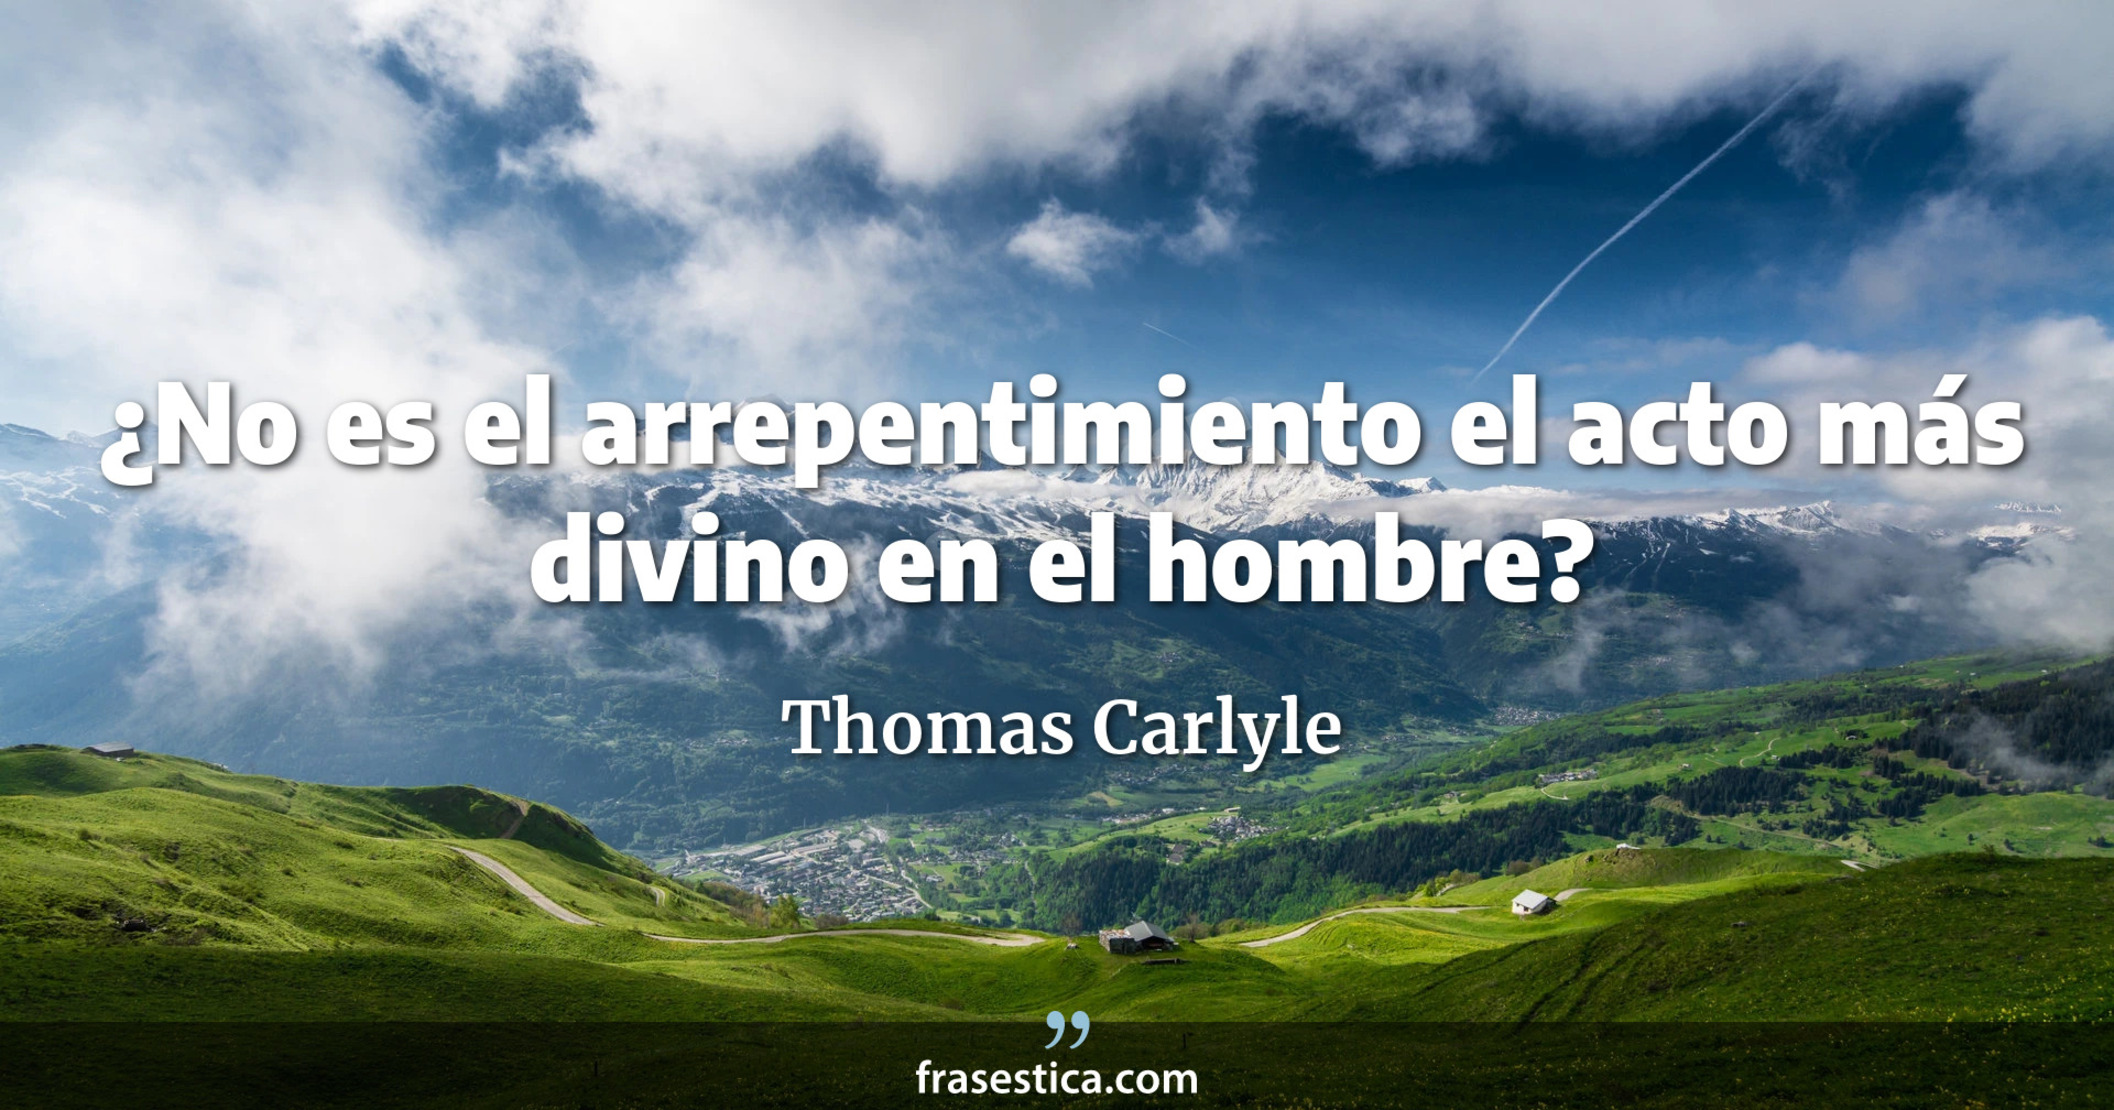 ¿No es el arrepentimiento el acto más divino en el hombre? - Thomas Carlyle